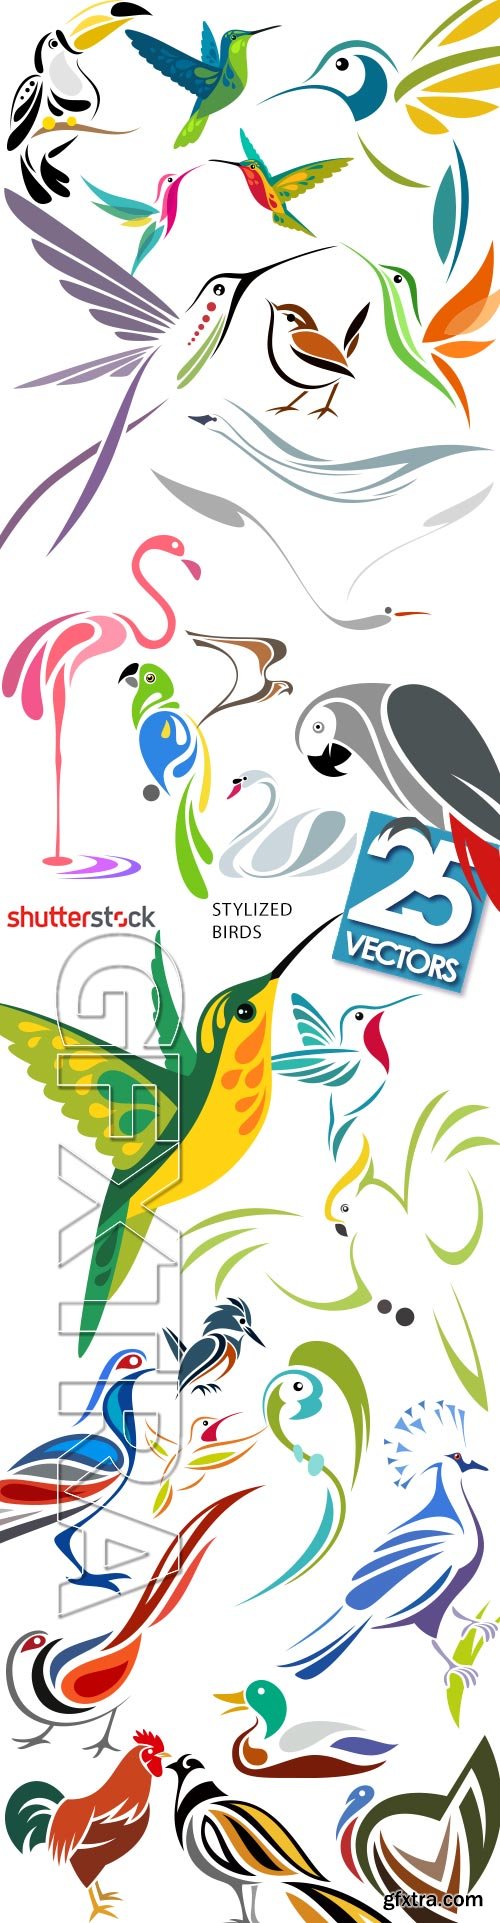 Stylized Birds I, 25xEPS